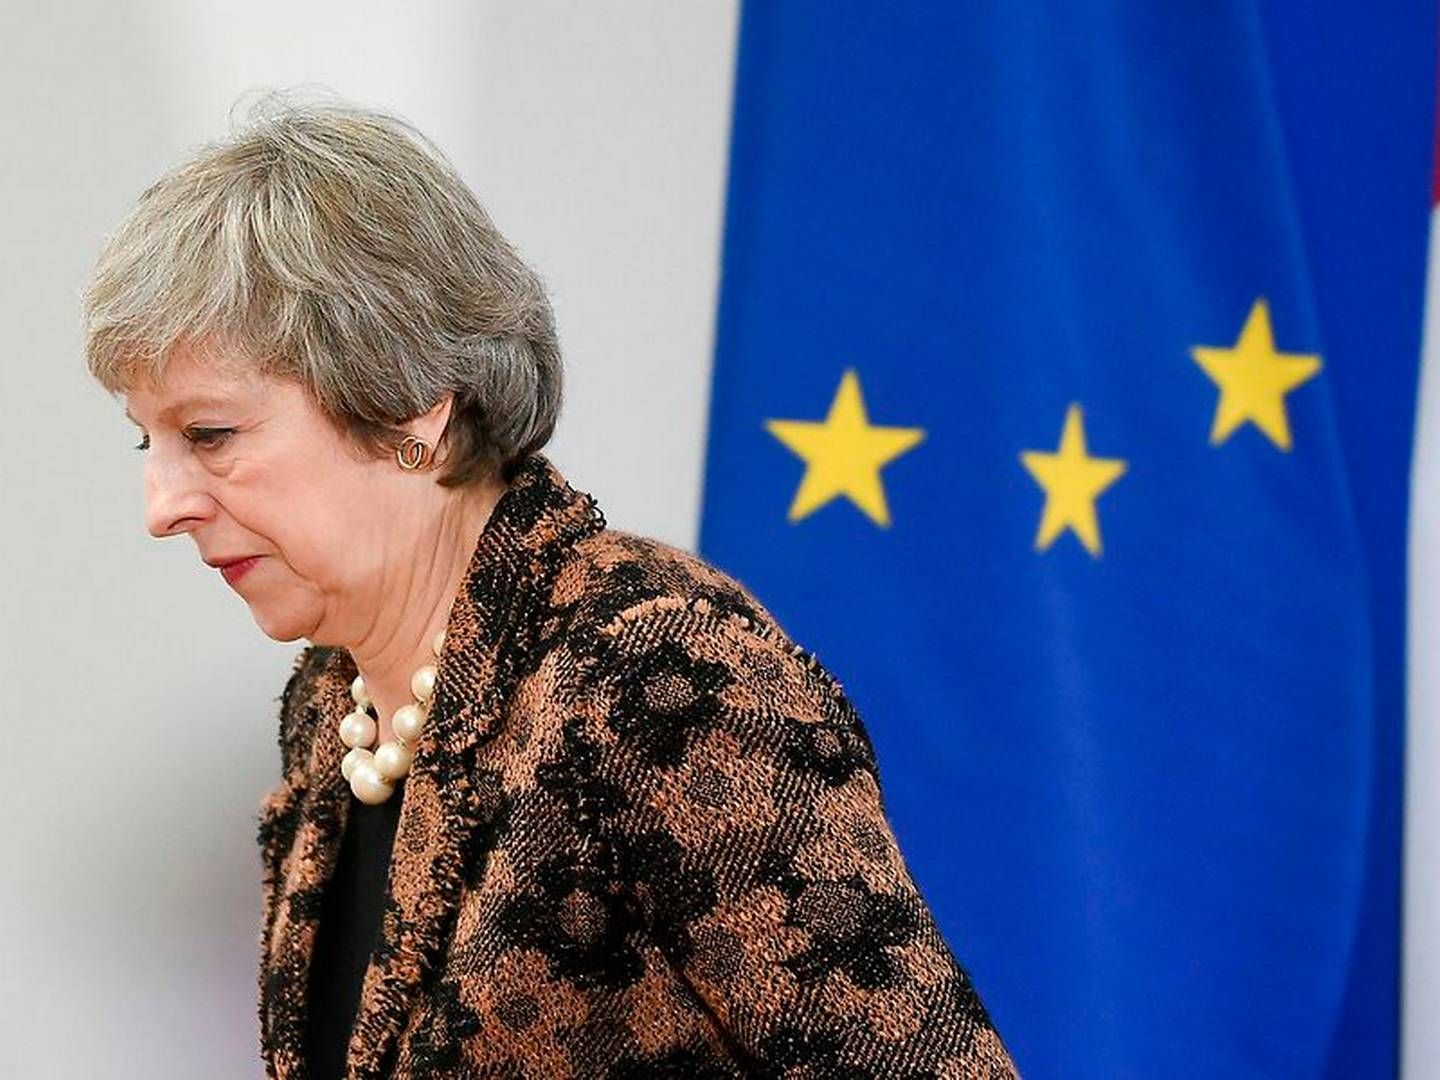 Den britiske premierminister Theresa May skal tirsdag forsøge at få sin brexit-aftale igennem Underhuset. | Foto: John Thys/Ritzau Scanpix